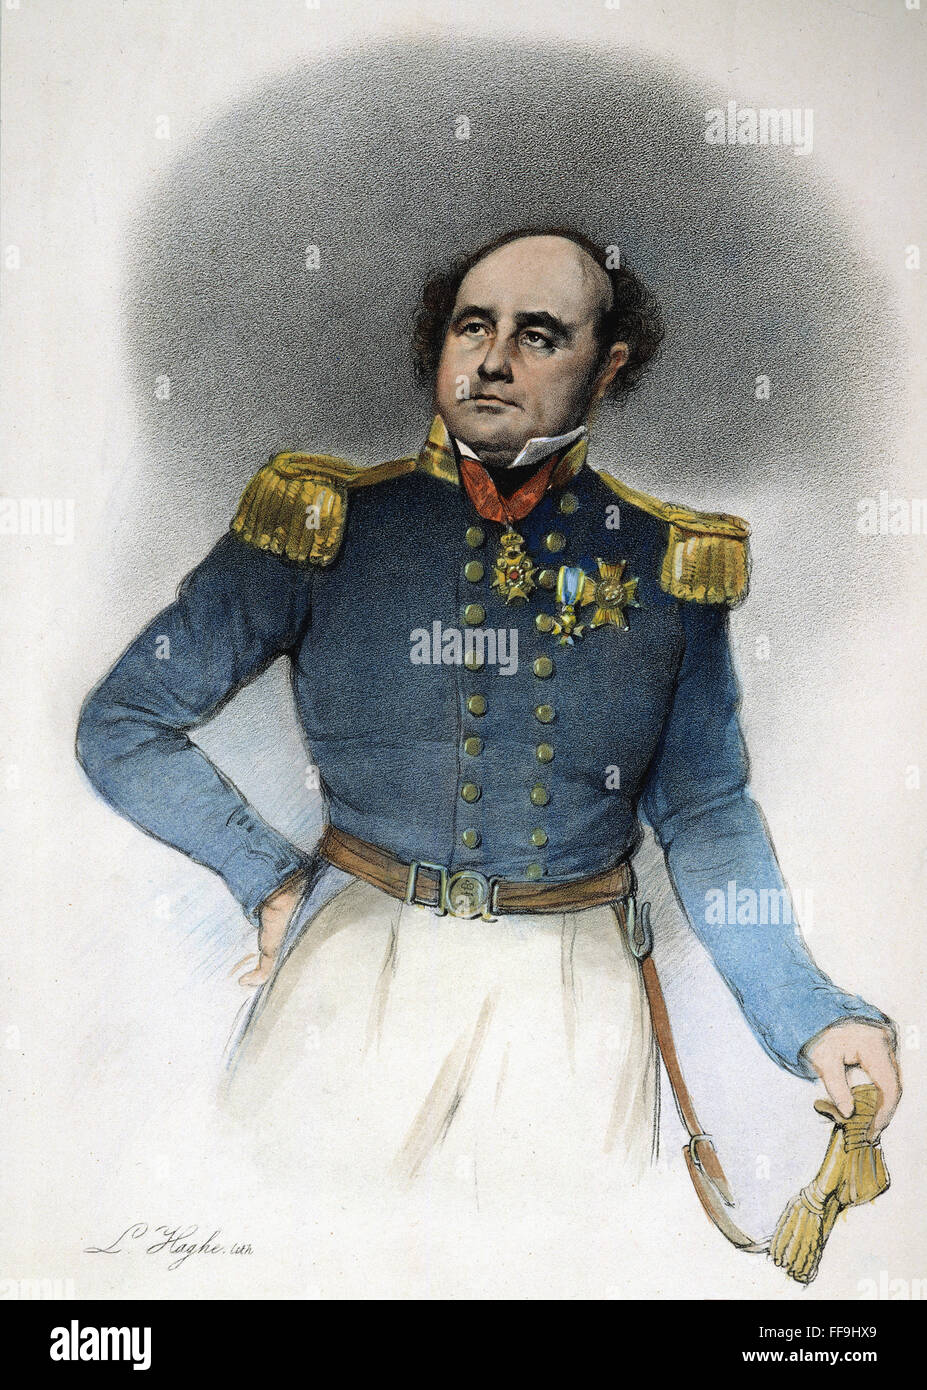 SIR JOHN FRANKLIN/n(1786-1847). Officier de la marine anglaise et explorateur de l'Arctique. Lithographie, 19ème siècle. Banque D'Images